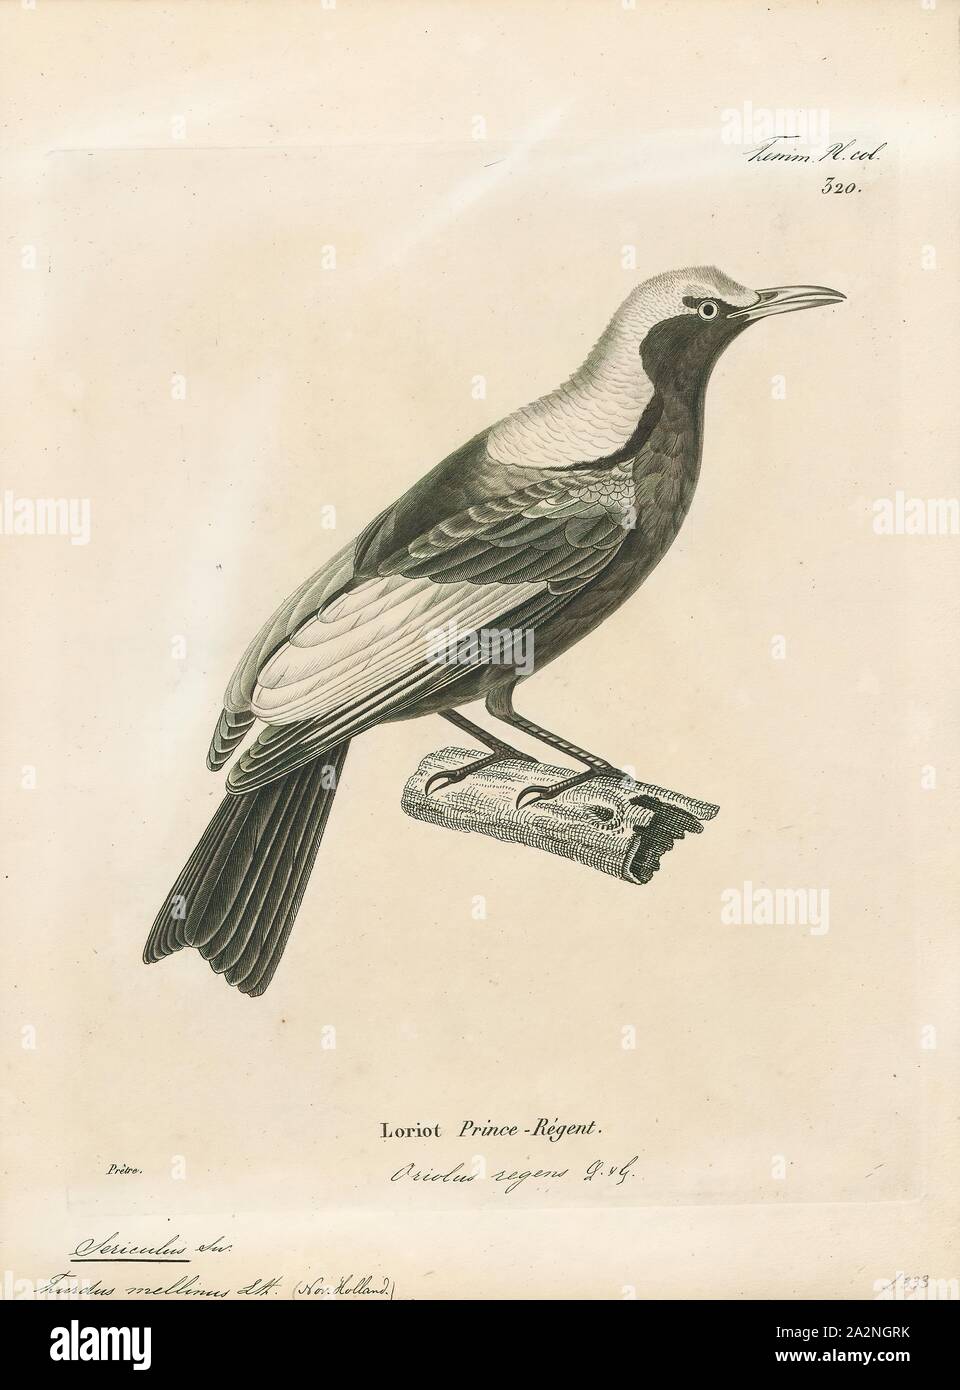 Sericulus melinus, Ausdrucken, die Gattung Sericulus der Familie Ptilonorhynchidae besteht aus drei spektakulär farbigen Bowerbirds., 1700-1880 Stockfoto